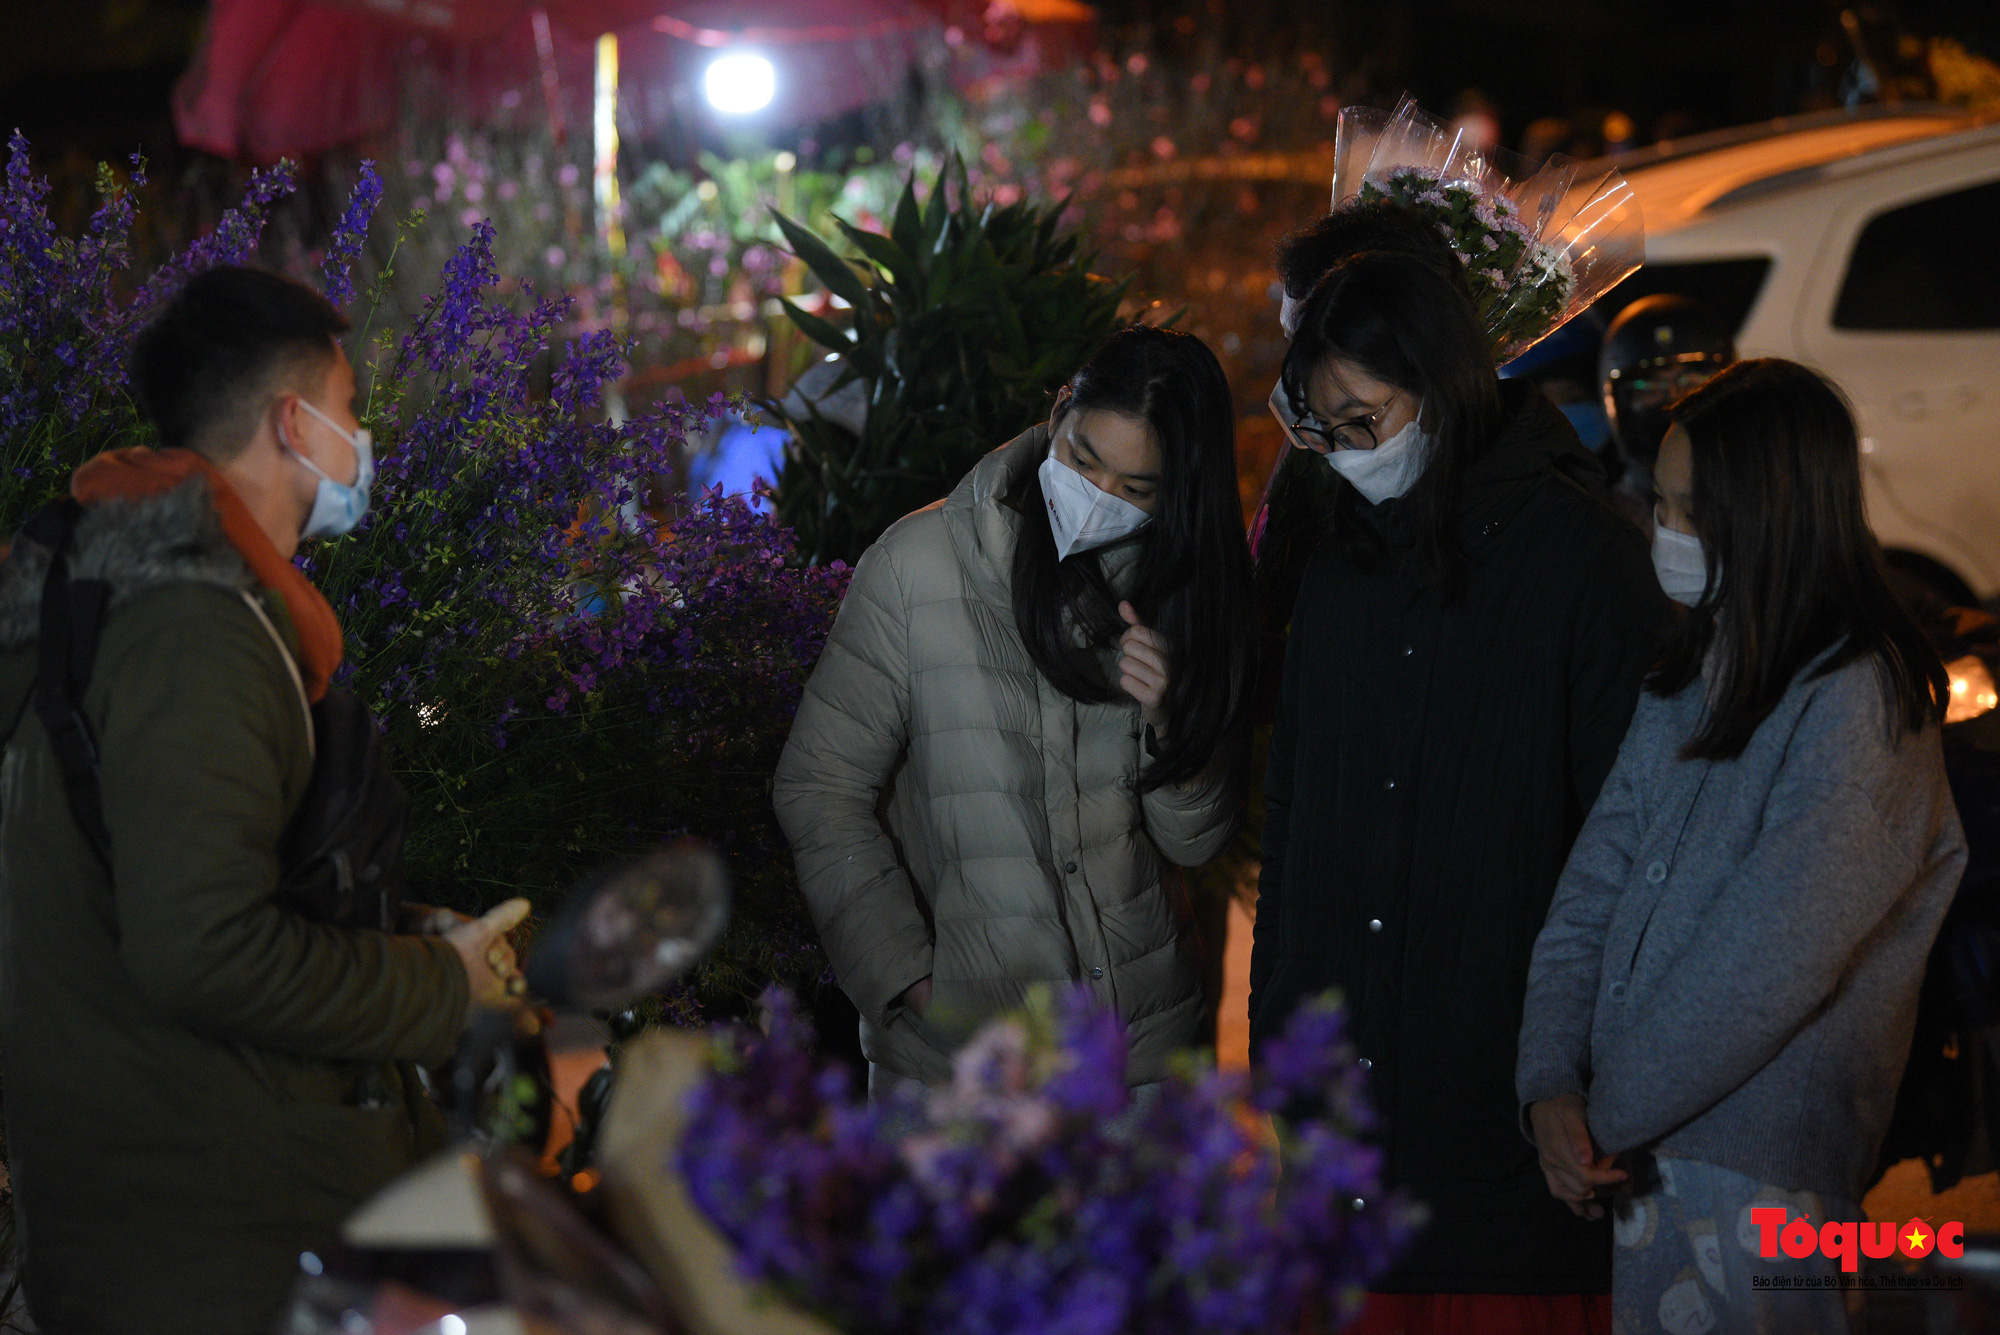 Chợ hoa đêm lớn nhất Hà Nội rộn ràng ngày cận Tết - Ảnh 12.